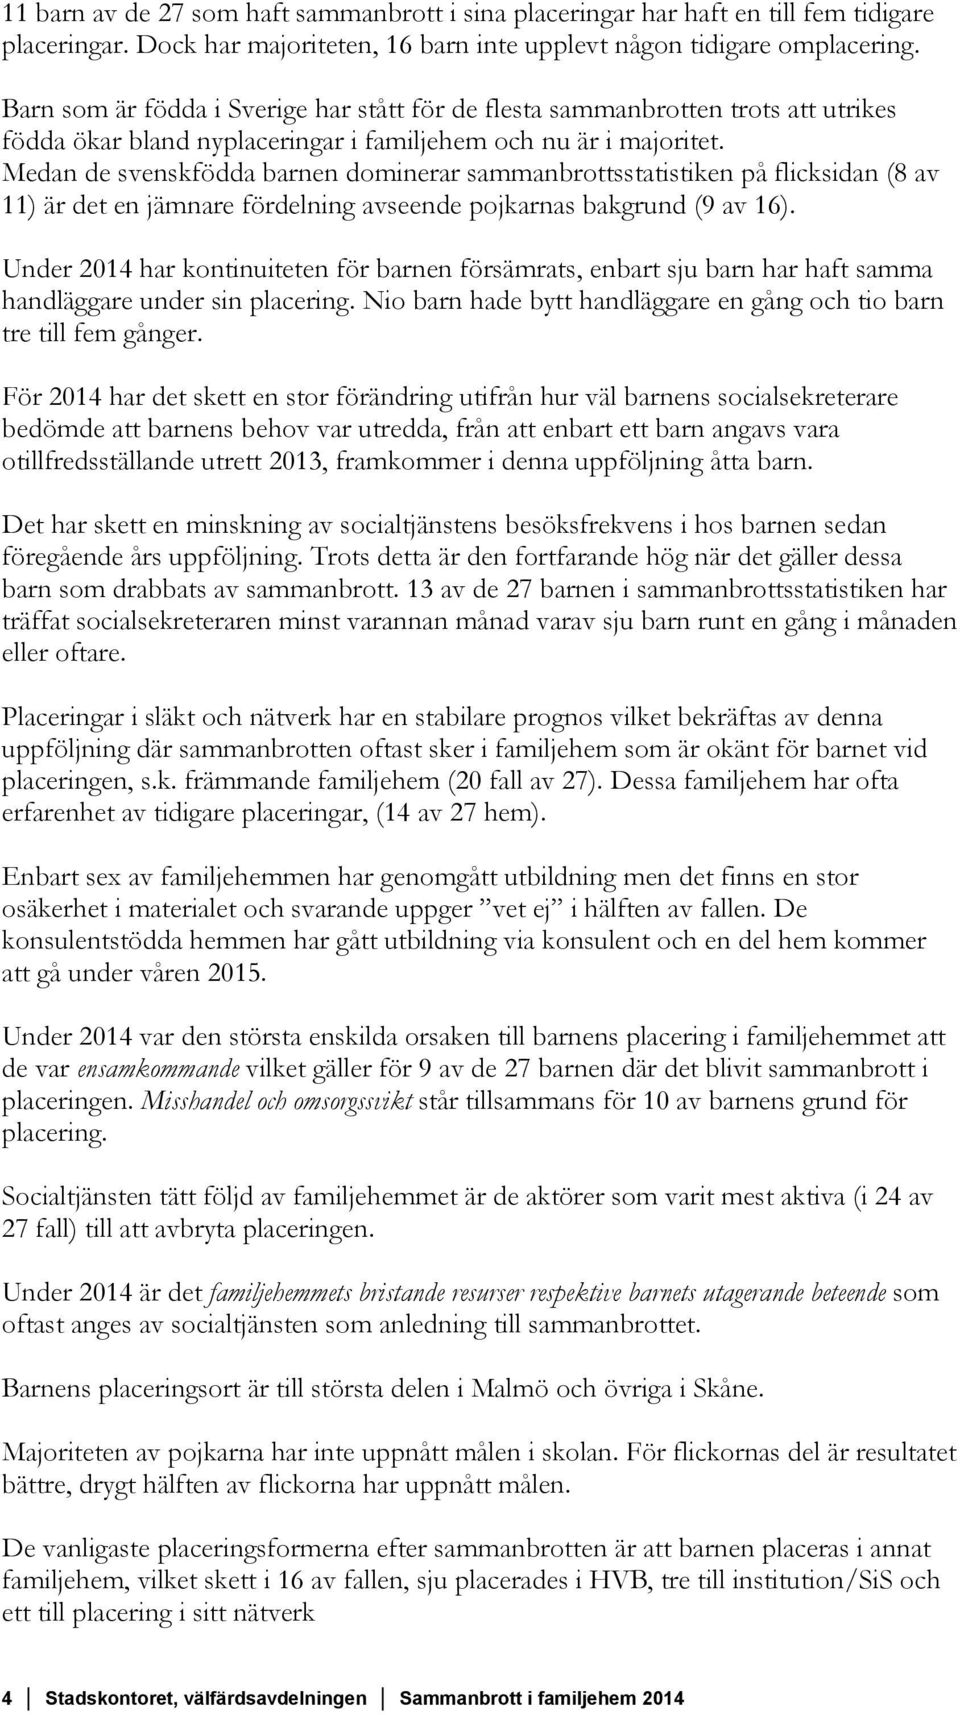 Medan de svenskfödda barnen dominerar sammanbrottsstatistiken på flicksidan (8 av 11) är det en jämnare fördelning avseende pojkarnas bakgrund (9 av 16).